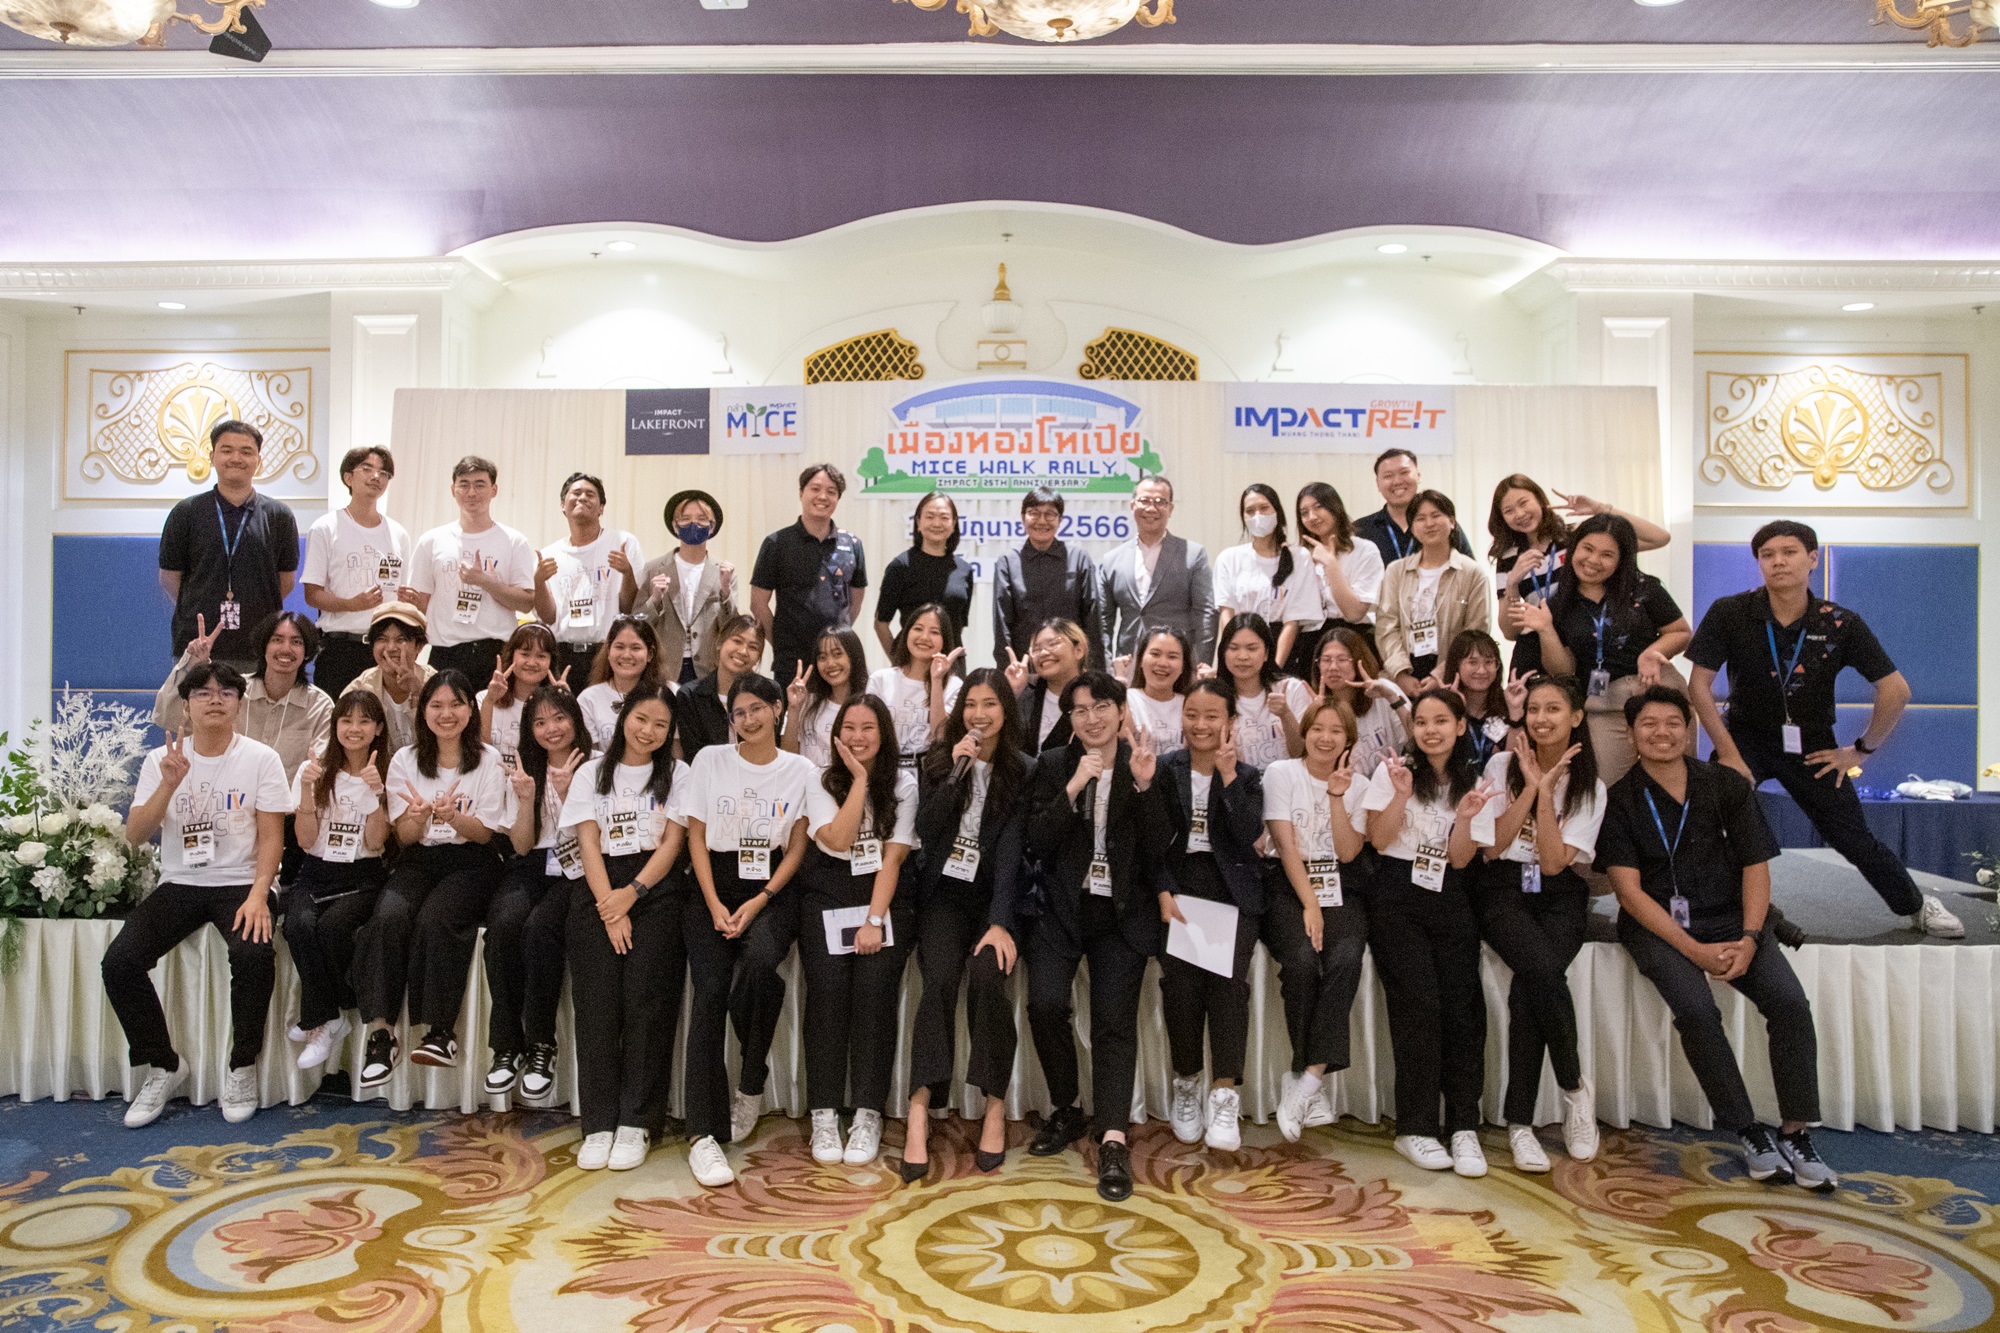 อิมแพ็ค เมืองทองธานี จัดกิจกรรม “เมืองทองโทเปีย ไมซ์ วอร์ค แรลลี่” ต่อยอดโครงการกล้าMICE ขยายฐานนักเรียนมัธยมปลาย ปั้นคลื่นลูกใหม่ให้อุตสาหกรรมไมซ์ไทย